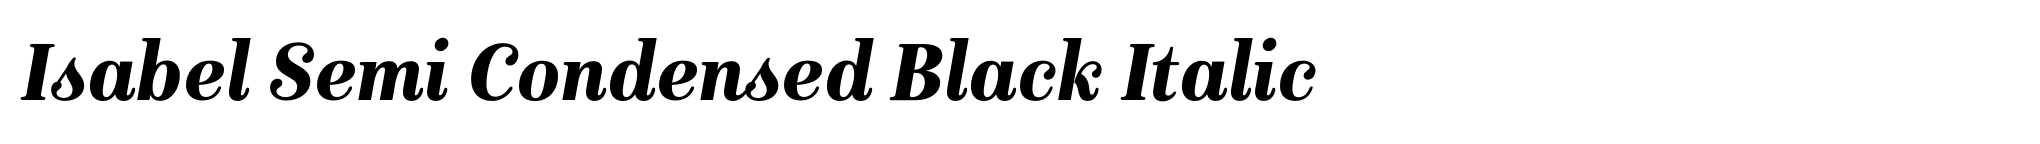 Isabel Semi Condensed Black Italic image